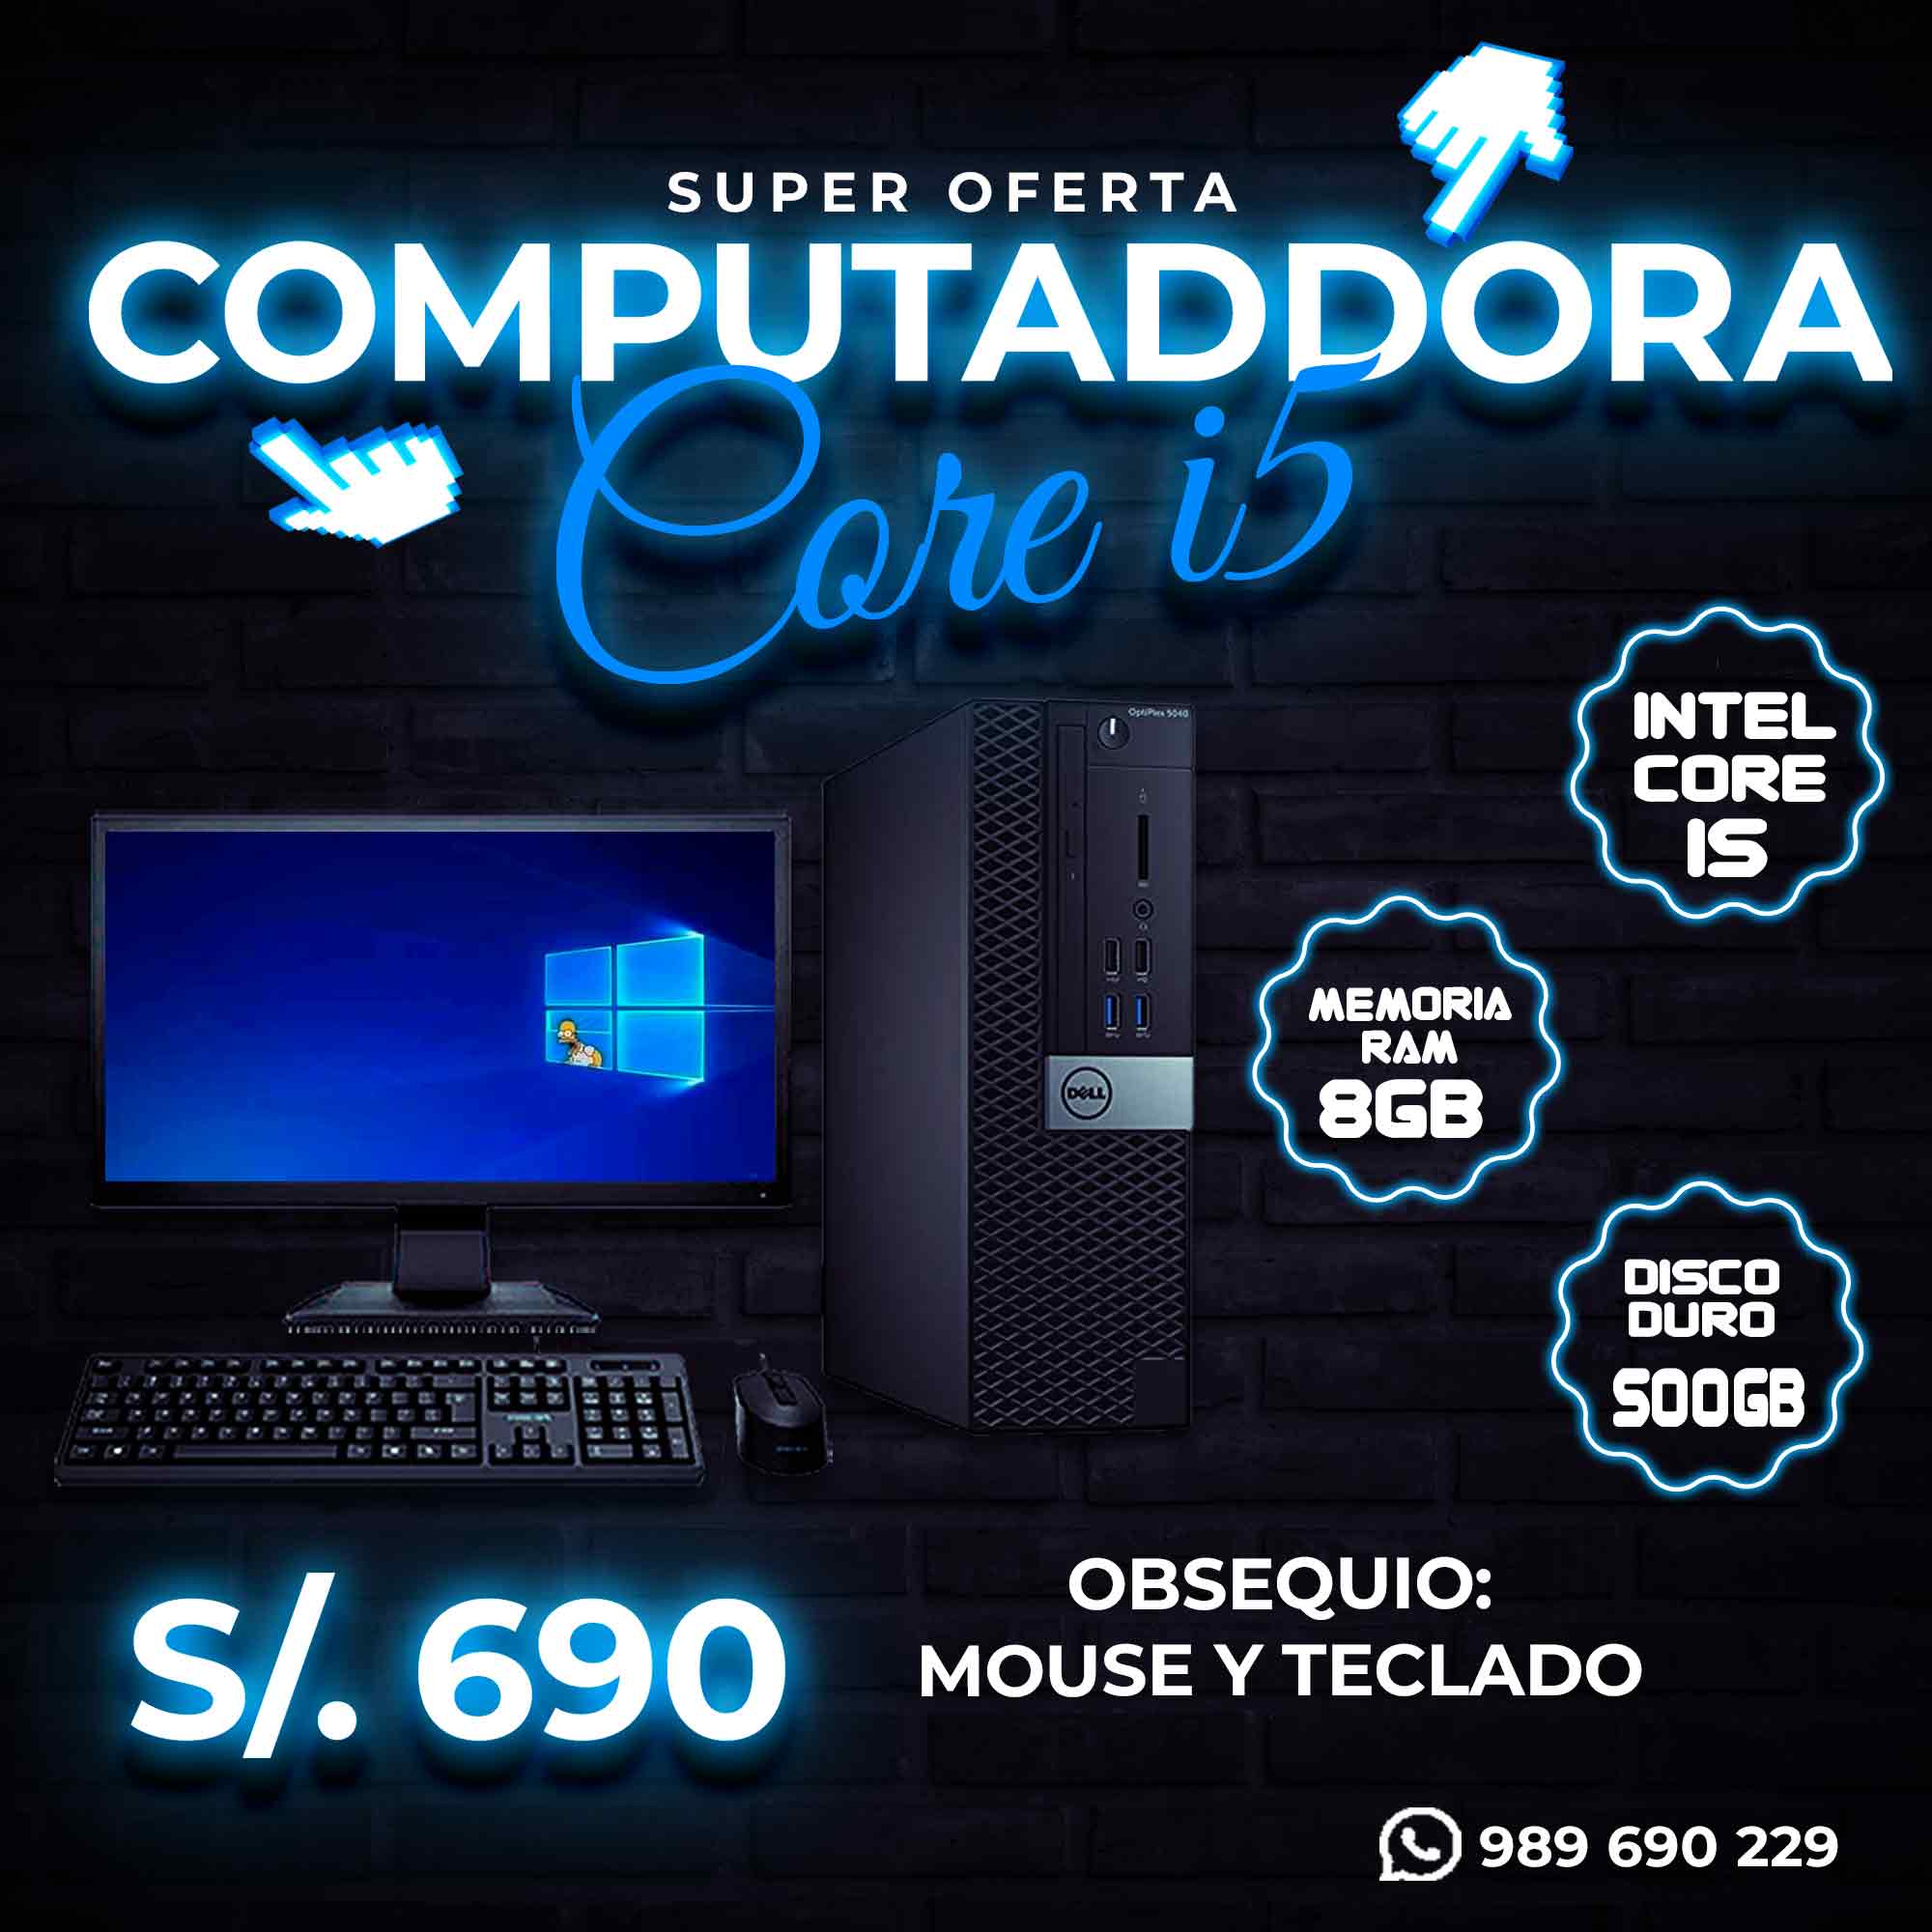 SUPER OFERTA EN COMPUTADORA CORE I5